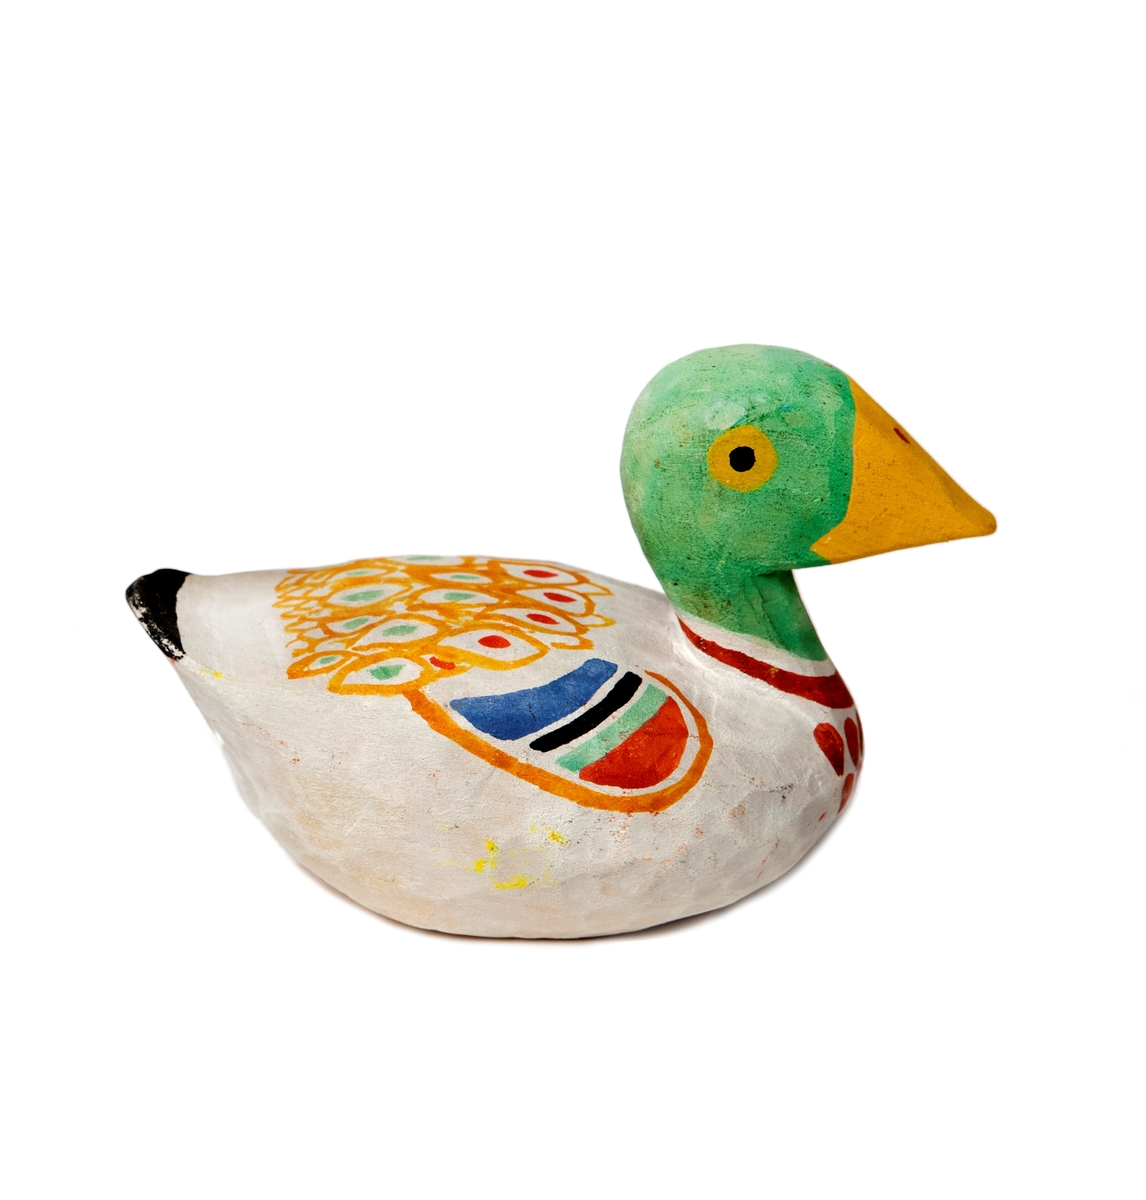 Fågelfigur, and av trä, handmålad i grått, rött, gult, grönt, blått. Märkt No 230. Pris 2,55 kr.